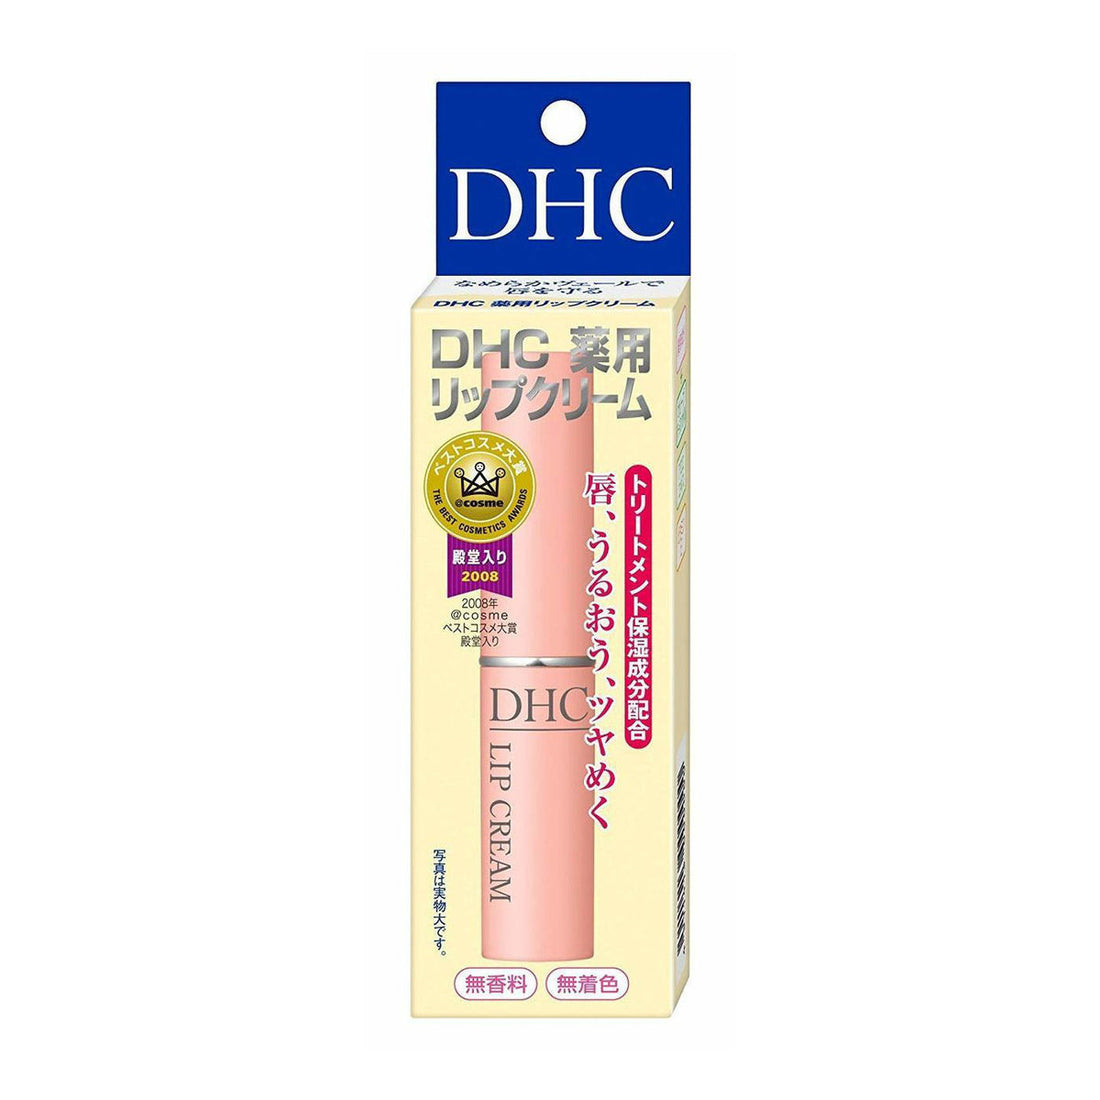 DHC Lip Cream